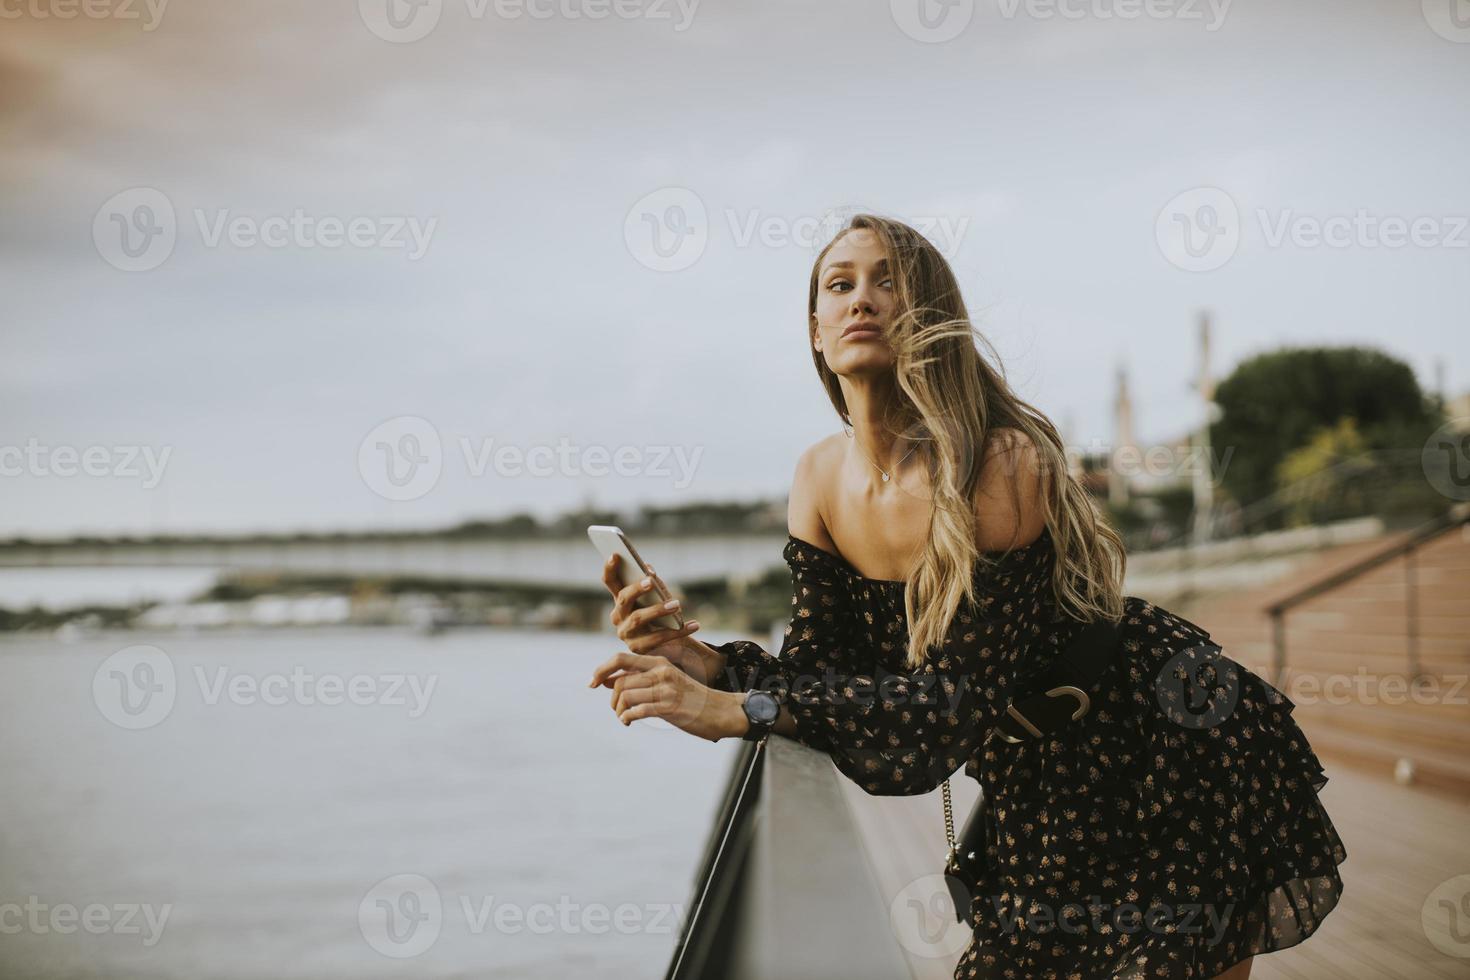 jonge langharige brunette vrouw die aan de rivier staat? foto